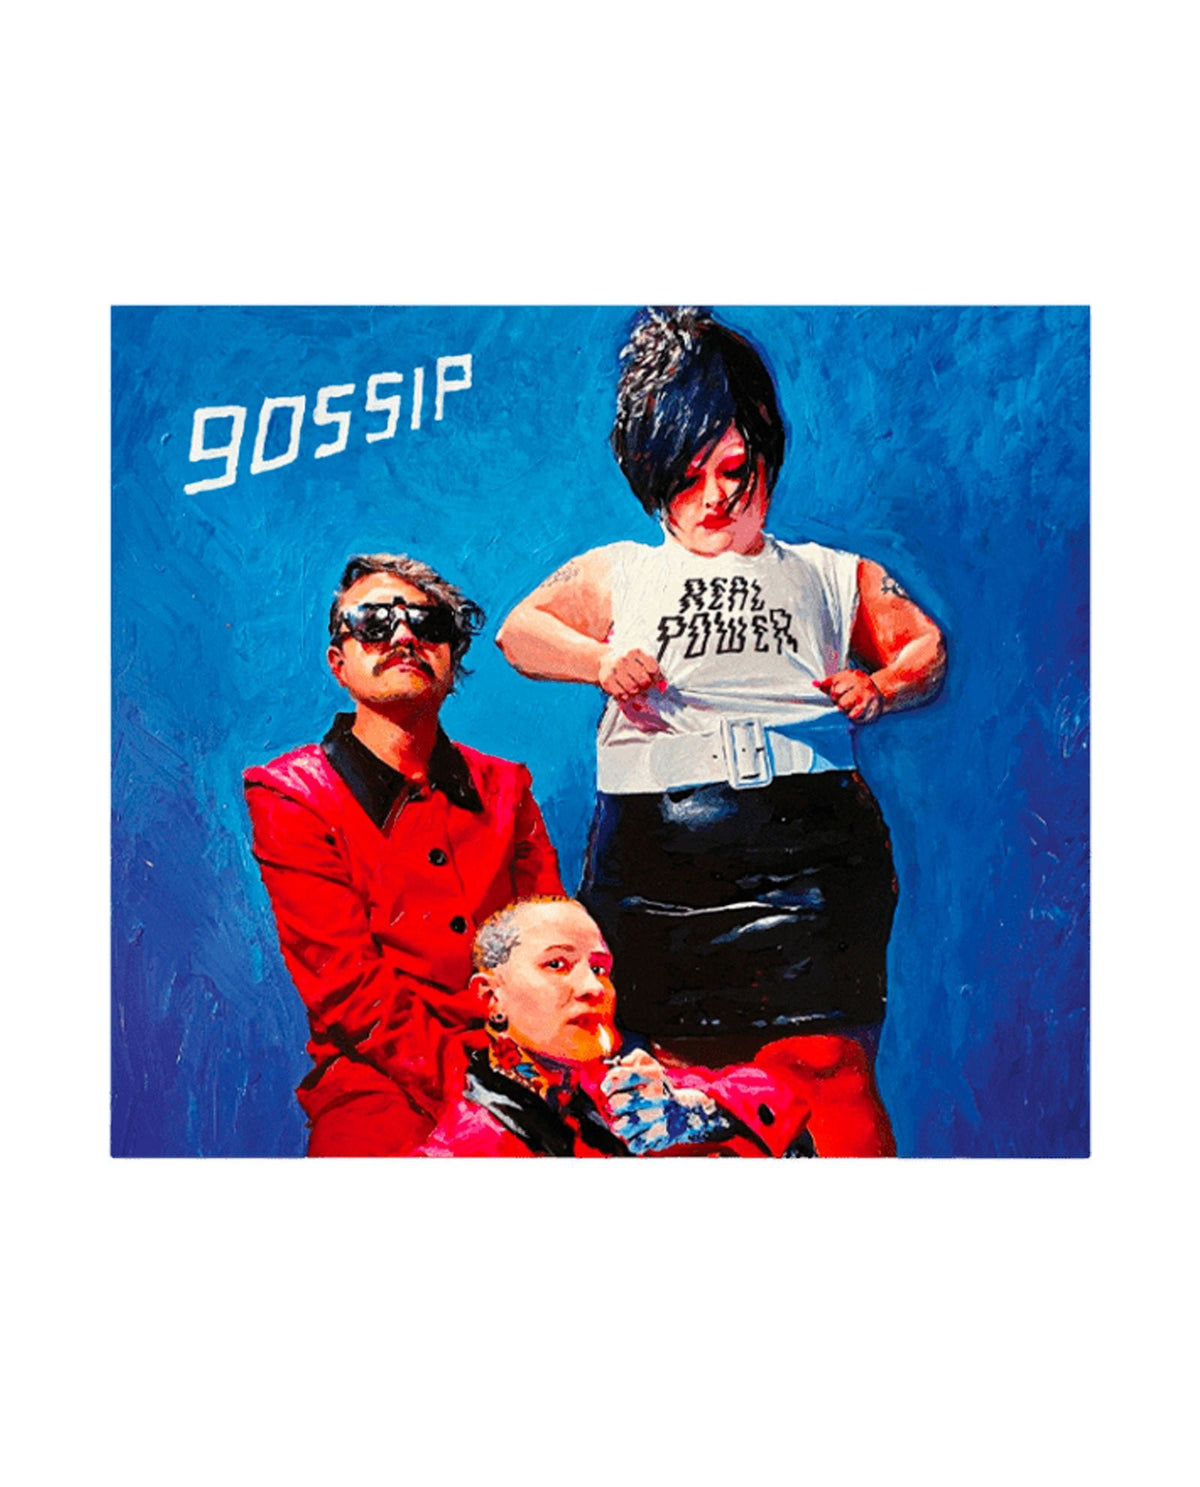 Gossip - CD "Real Power" - D2fy · Rocktud - Rocktud